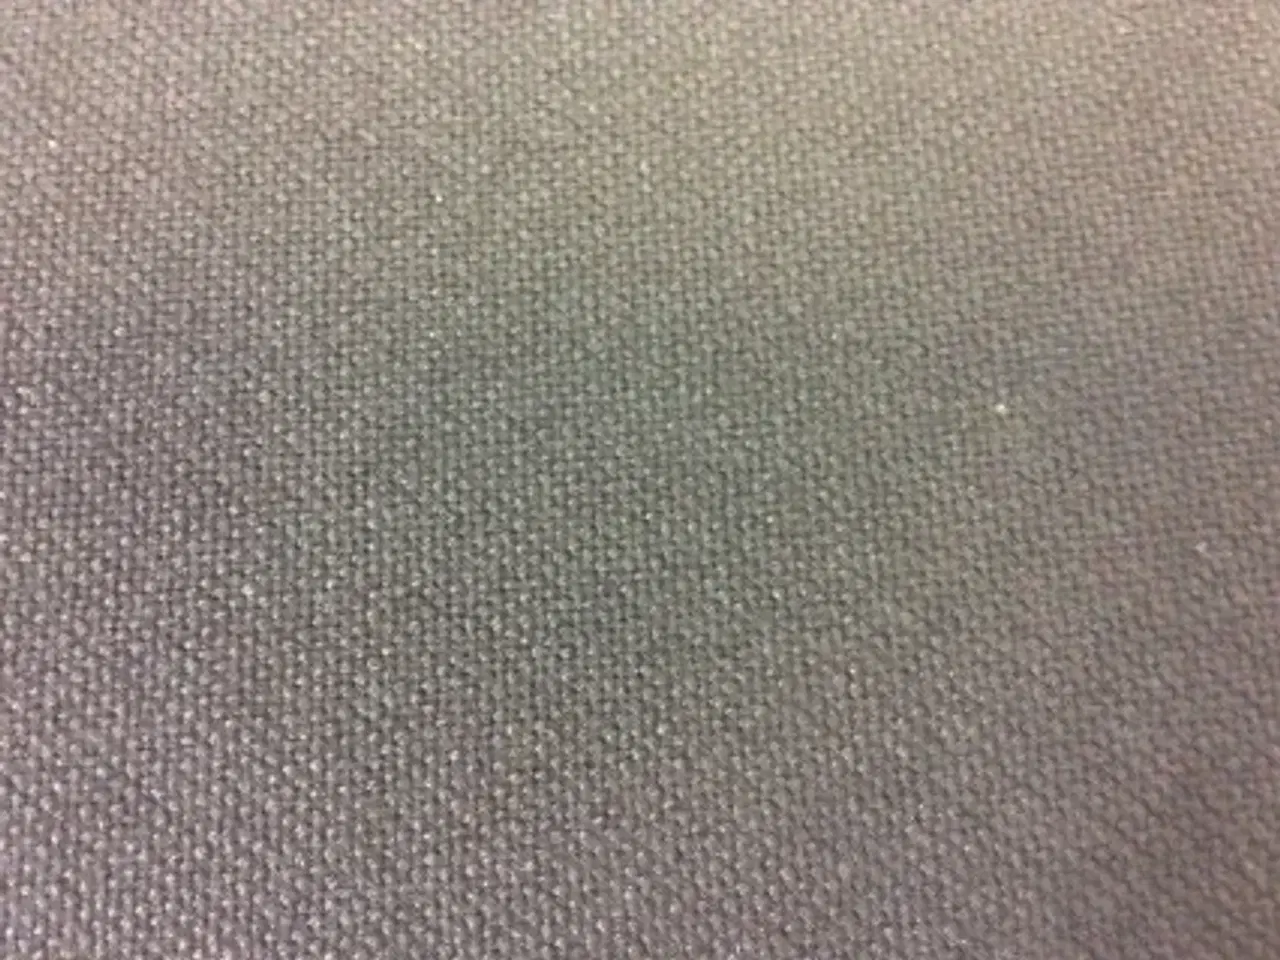 Billede 5 - Efg bondo konferencestol med sort uld polstret sæde, grå stel, bøge ryglæn med lille armlæn